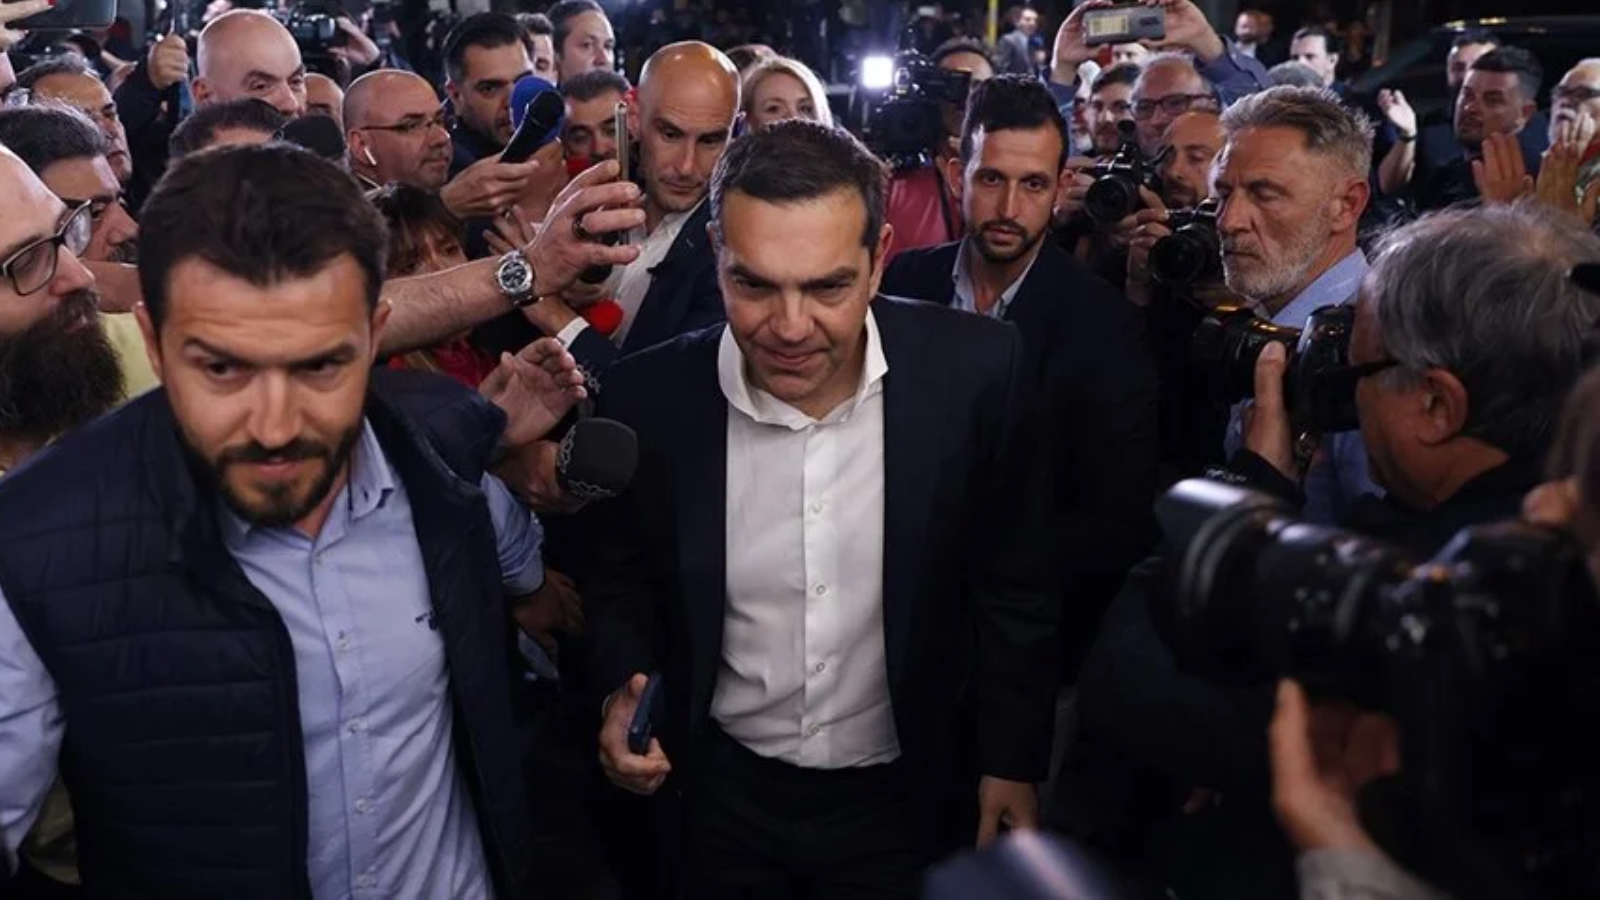 Ο Τσίπρας, που έχασε τις εκλογές στην Ελλάδα, παραιτήθηκε από τη γενική προεδρία του ΣΥΡΙΖΑ με τους στίχους του Ναζίμ Χικμέτ